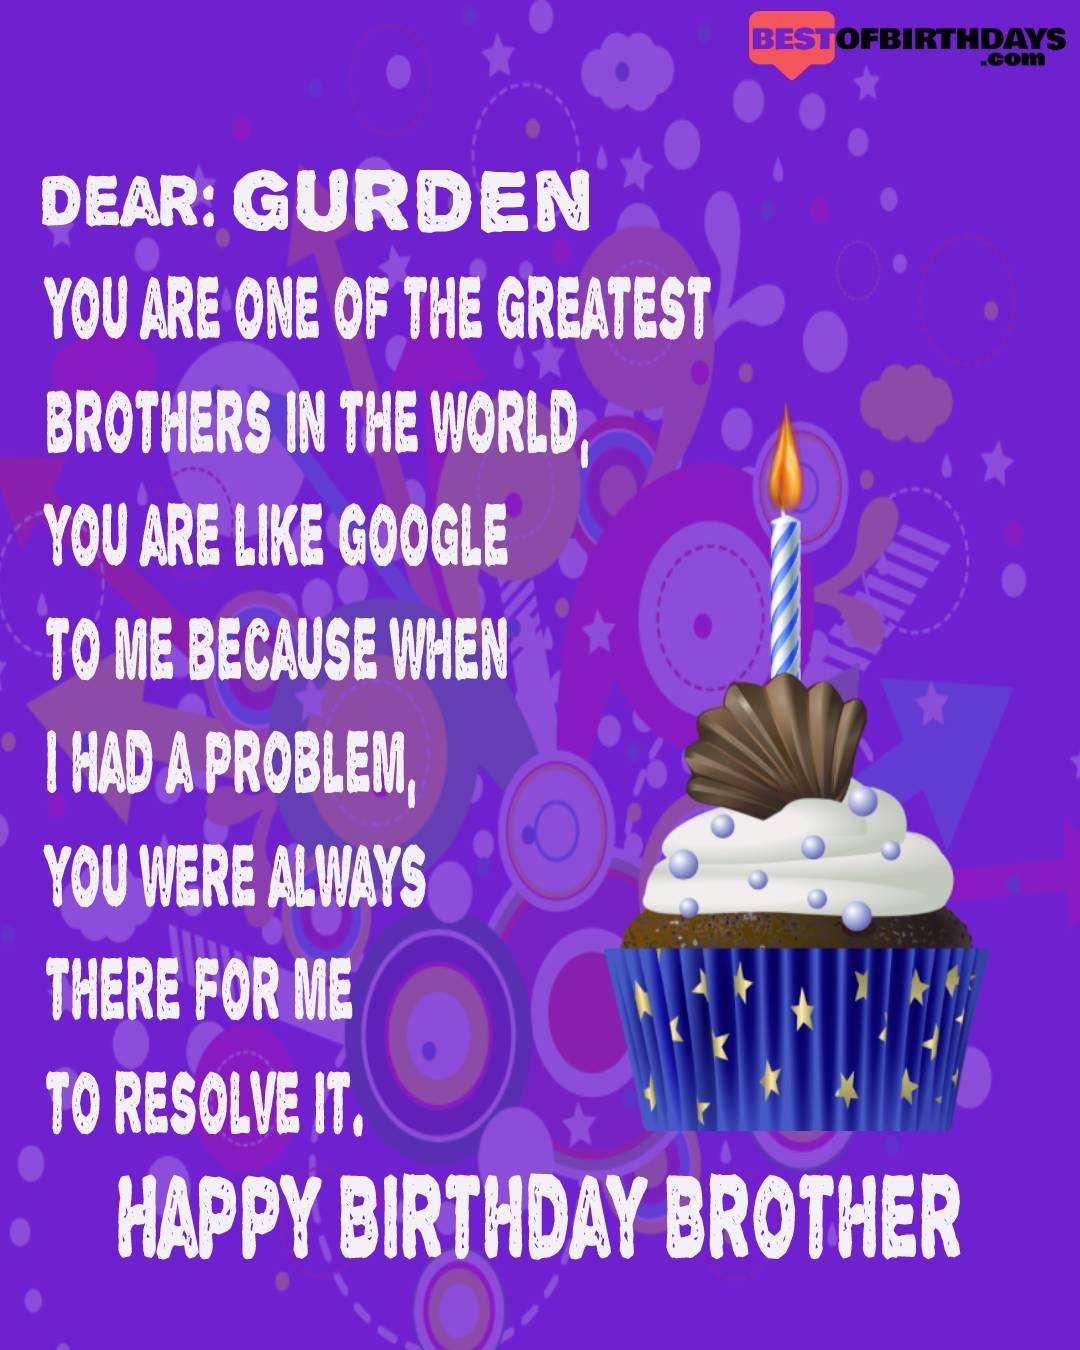 Happy birthday gurden bhai brother bro